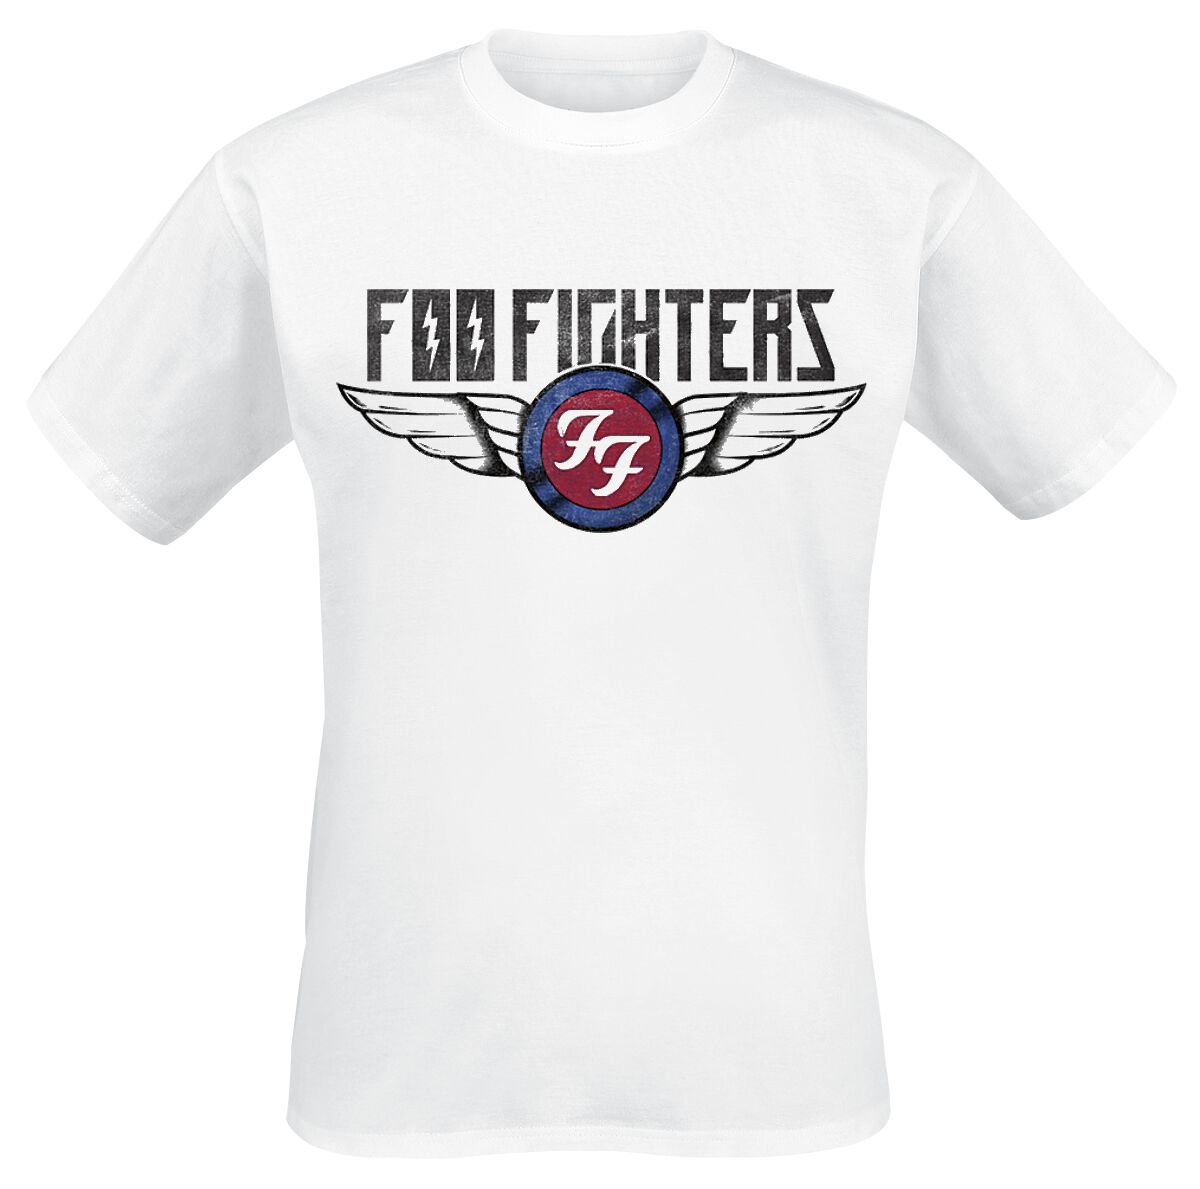 Foo Fighters T-Shirt - Flash Wings - S bis XXL - für Männer - Größe M - weiß  - Lizenziertes Merchandise!